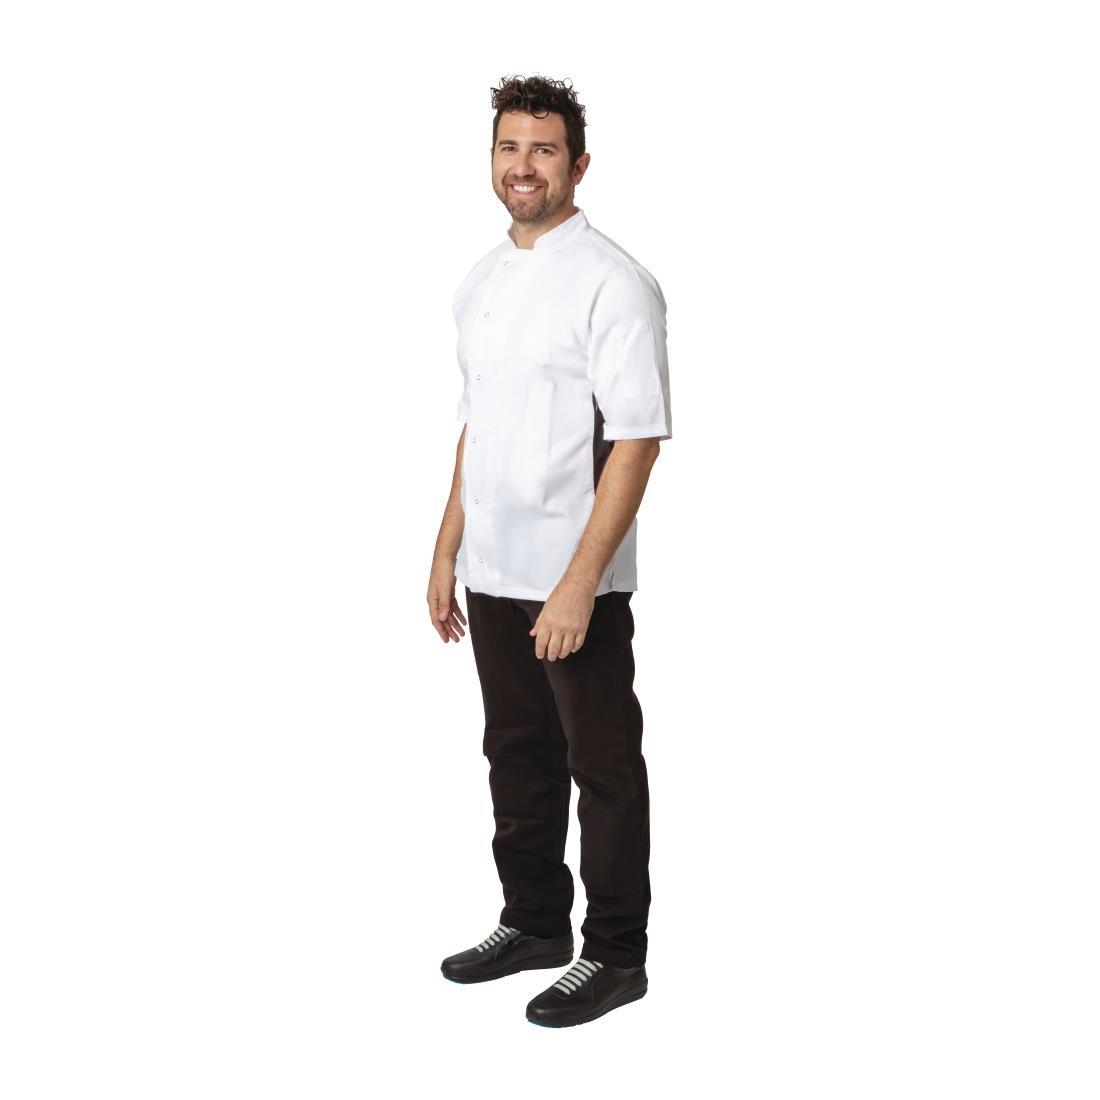 Whites Nevada Unisex Chefs Jacket Short Sleeve Black and White M - A928-M  - 3